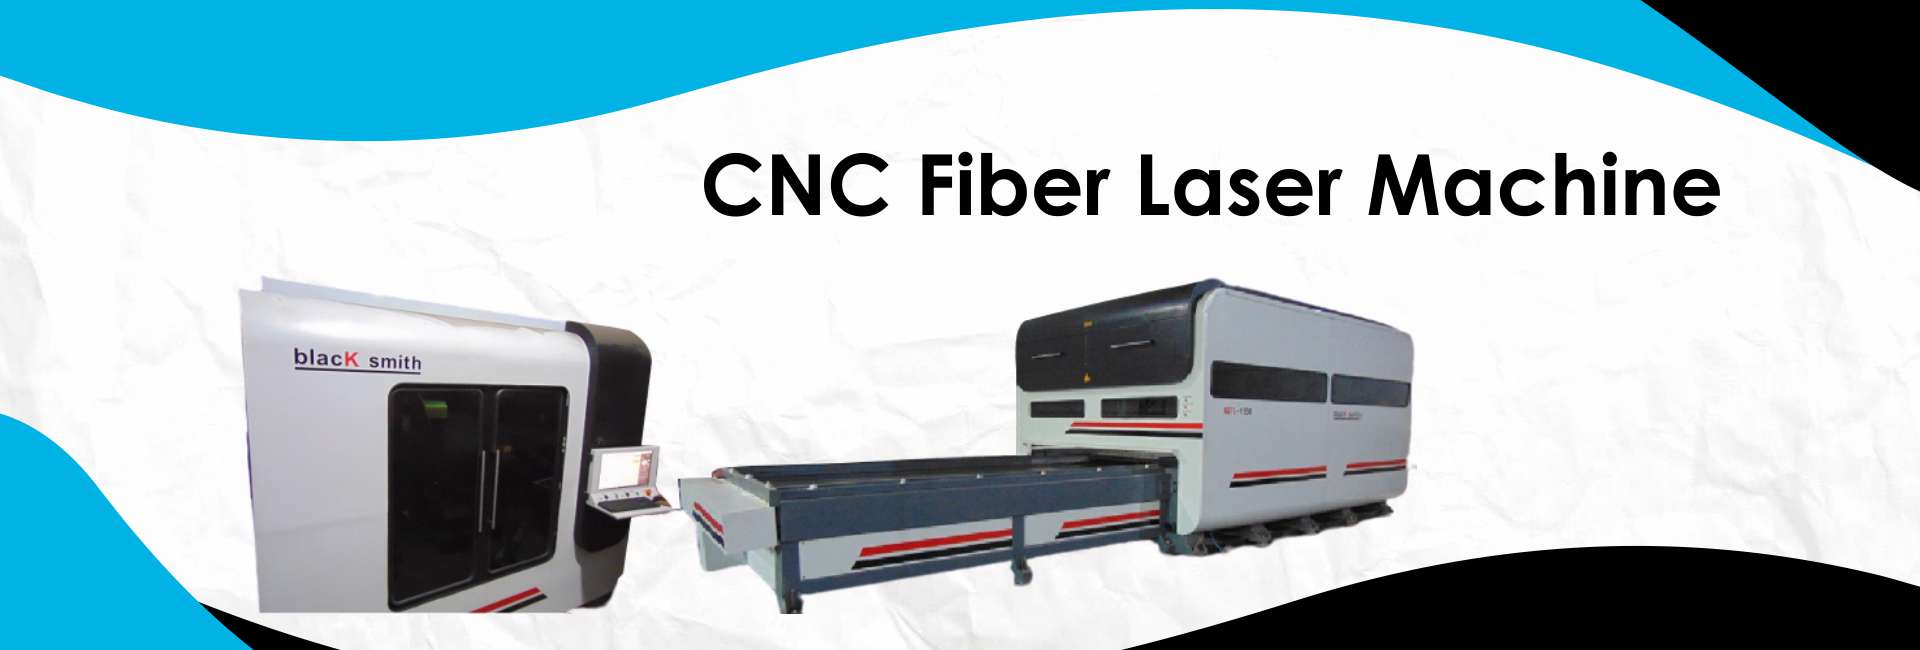 cnc fiber laser machine